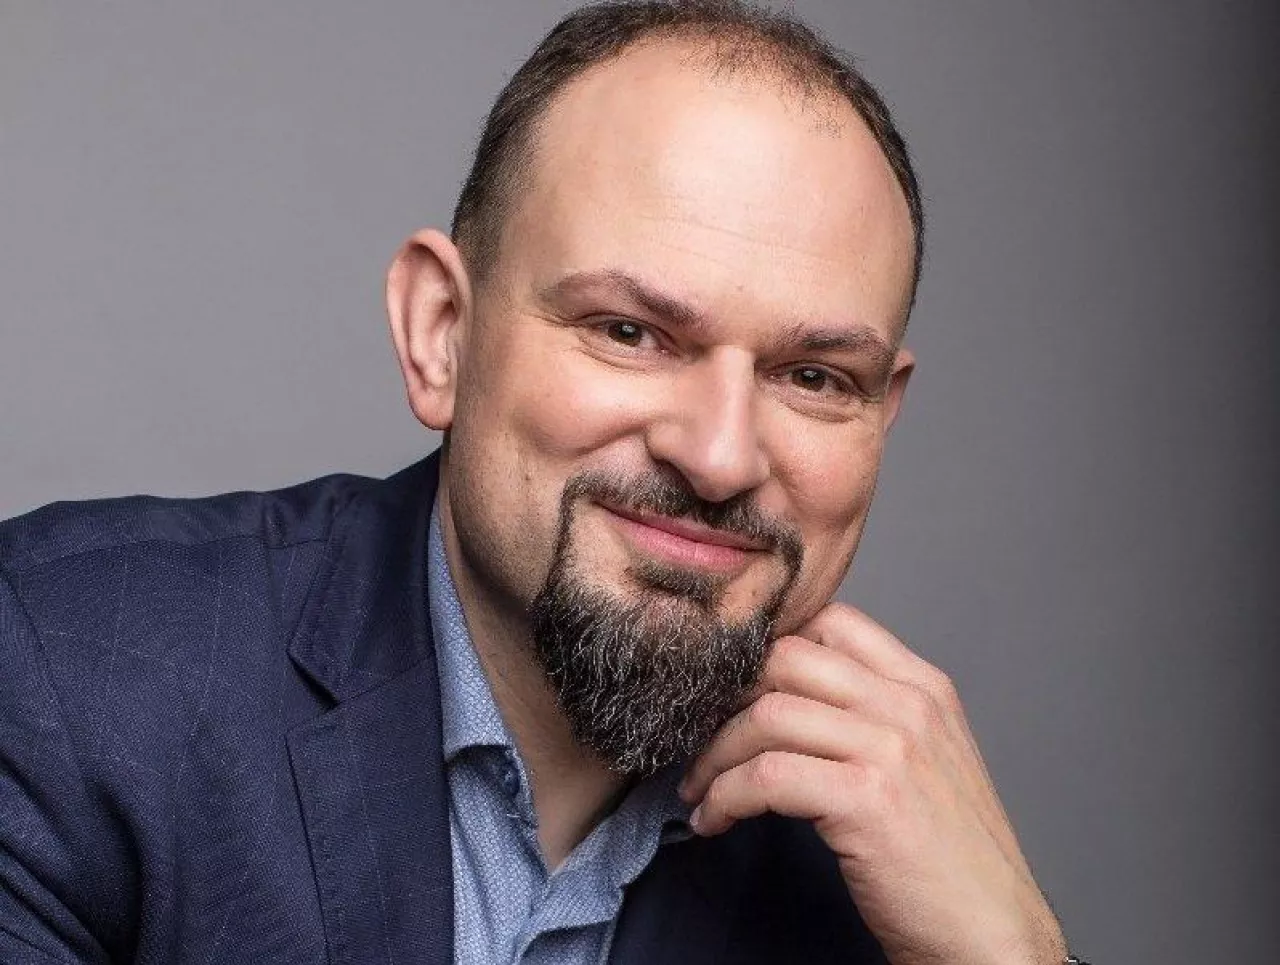 Robert Boguszewski, dyrektor generalny sieci KiK w Polsce (Linkedin.com)